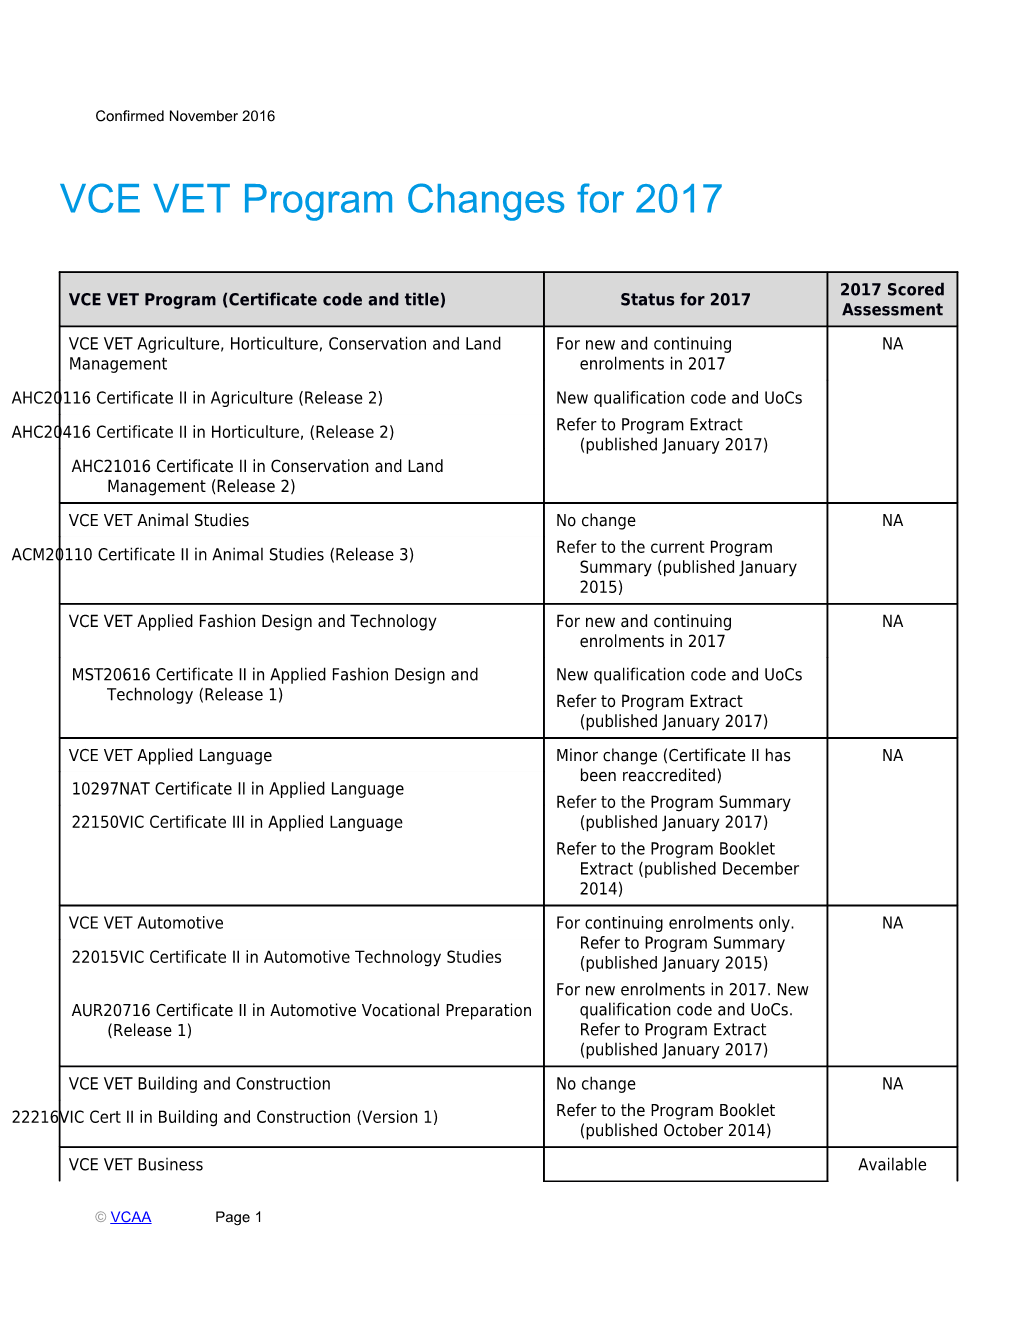 VCE VET Program Changes for 2017